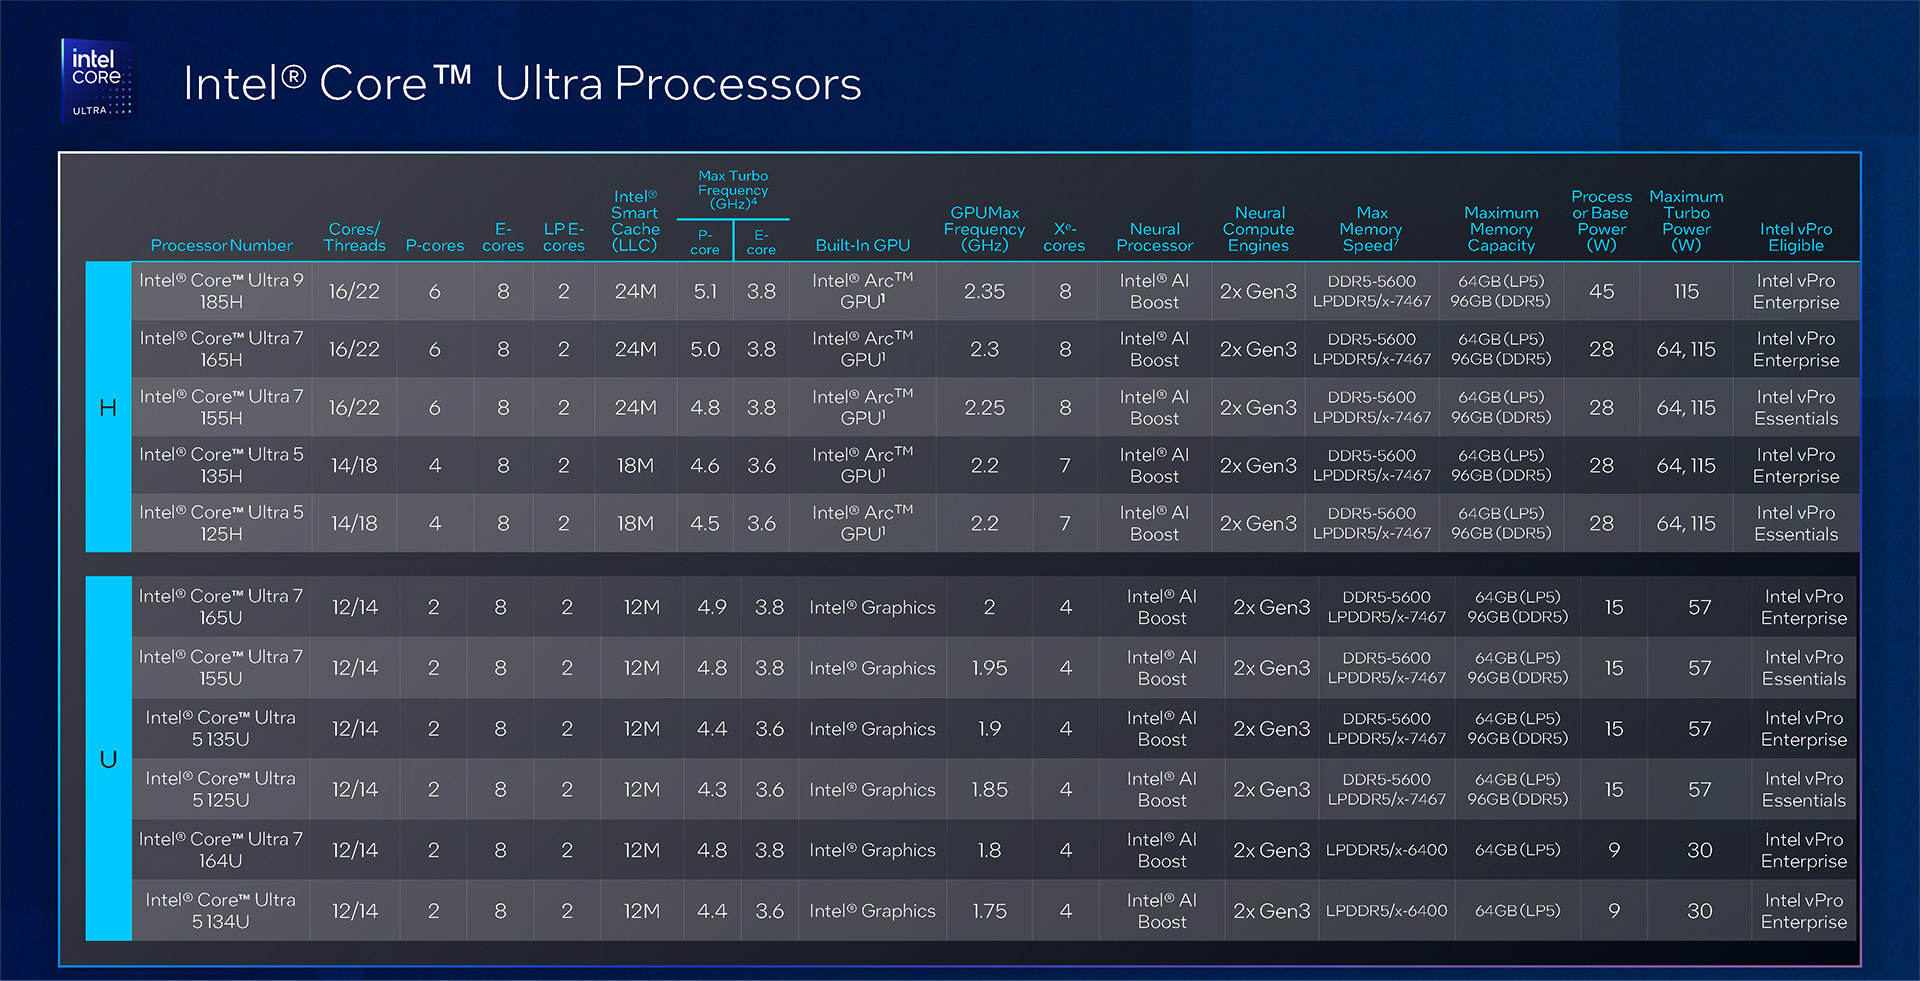 Intel vPro with Intel Core Ultra